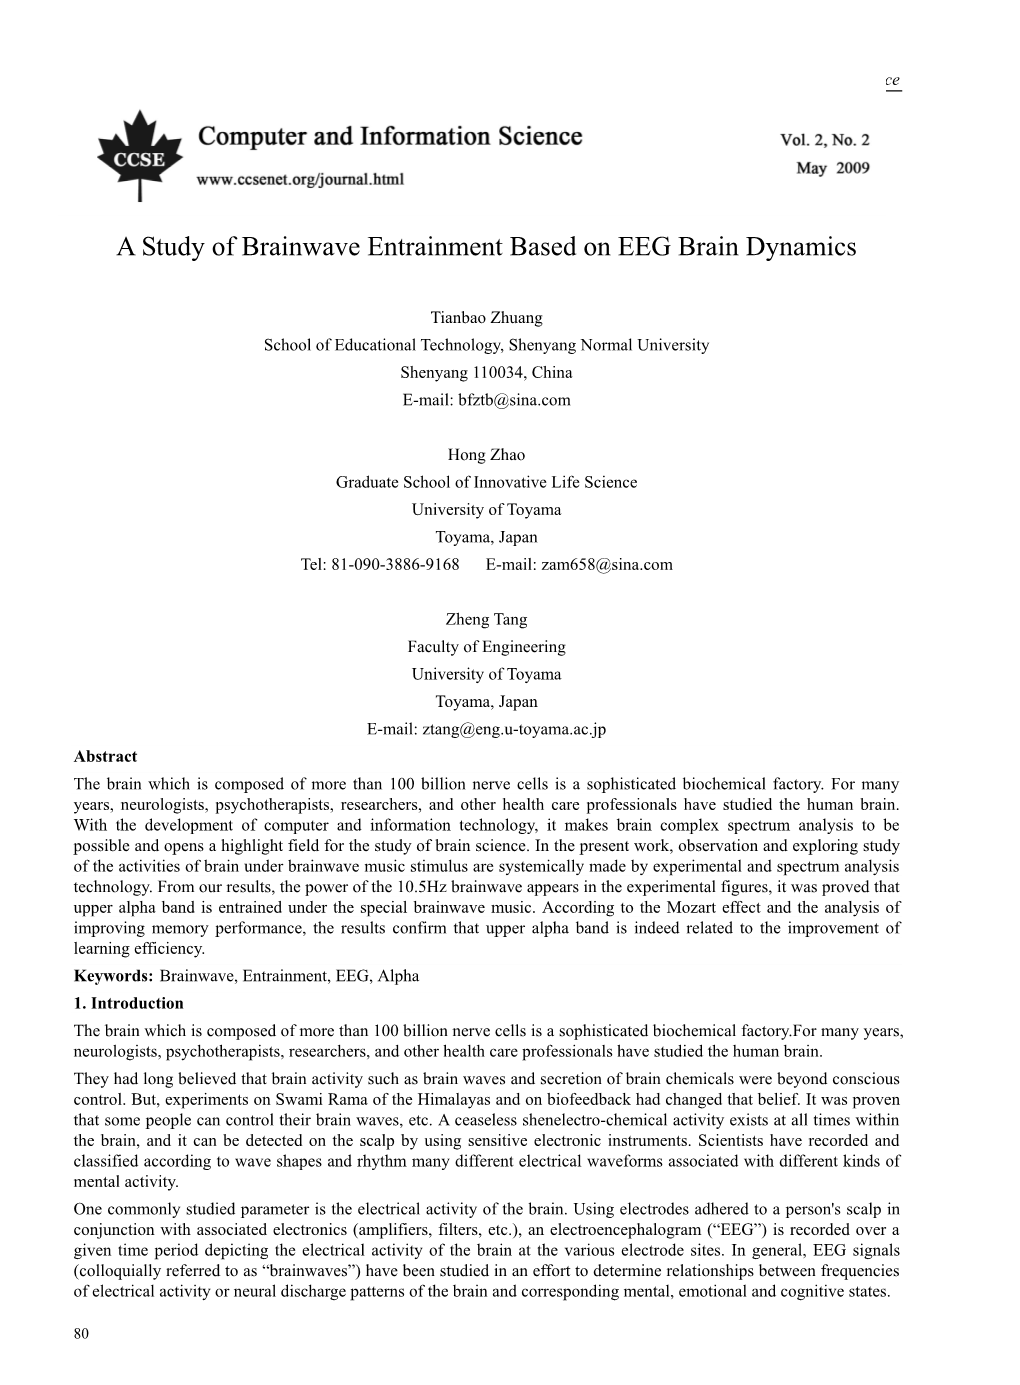 A Study of Brainwave Entrainment Based on EEG Brain Dynamics